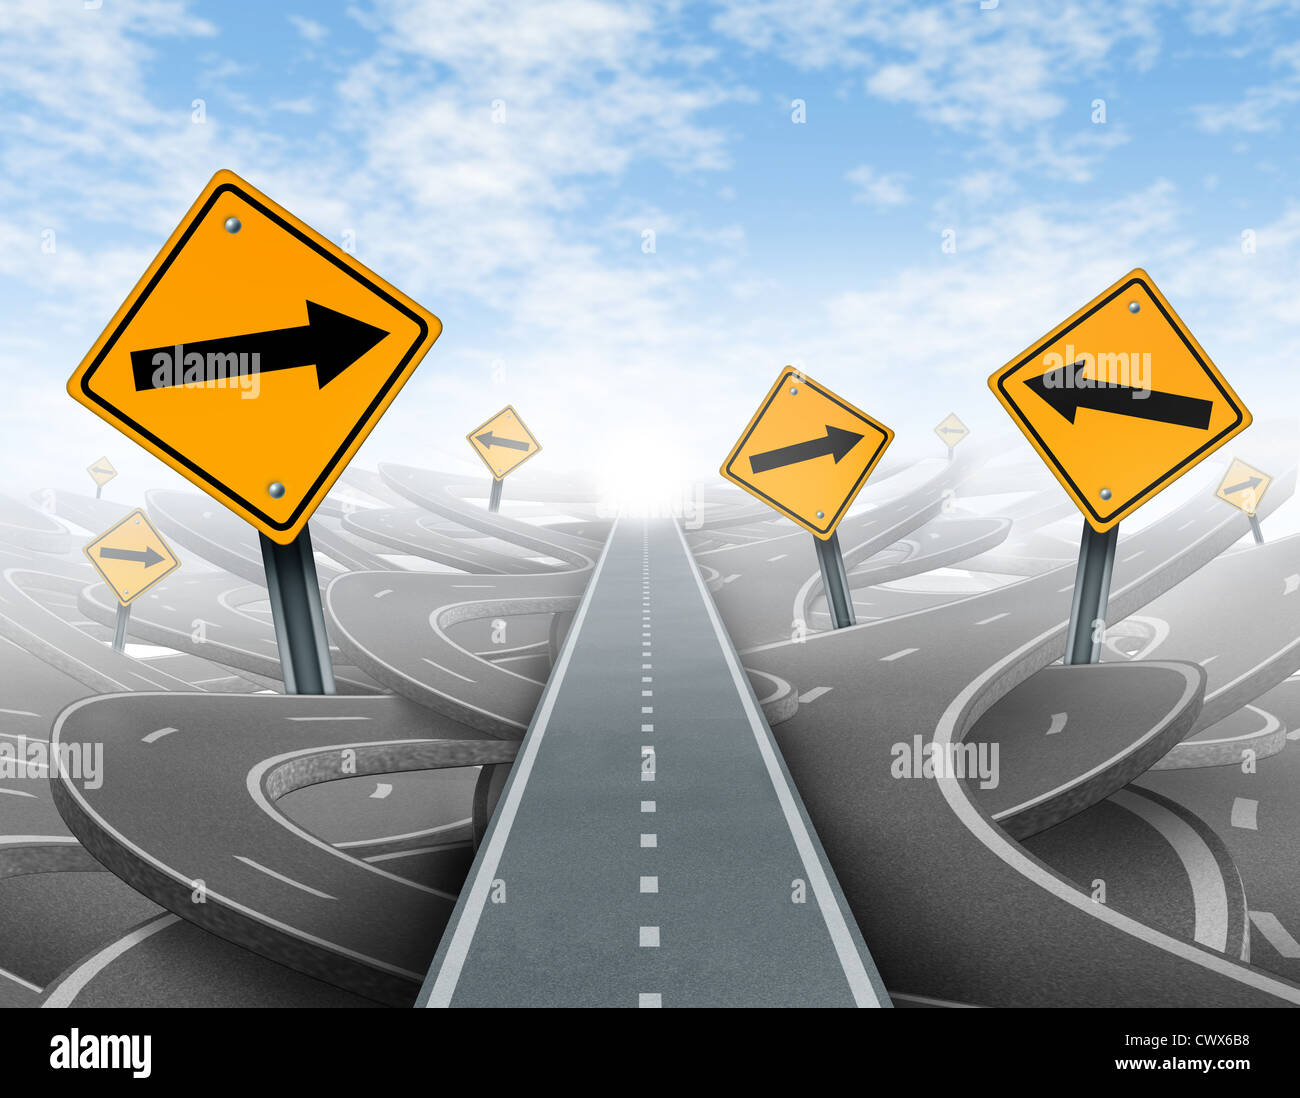 Klare Strategie und Lösungen für Business Leadership Symbol mit ein gerader Weg zum Erfolg als eine Reise, die Wahl des richtigen strategischen Weg für Unternehmen mit leere gelbe Verkehrszeichen schneiden durch ein Labyrinth von verschlungenen Straßen und Autobahnen. Stockfoto